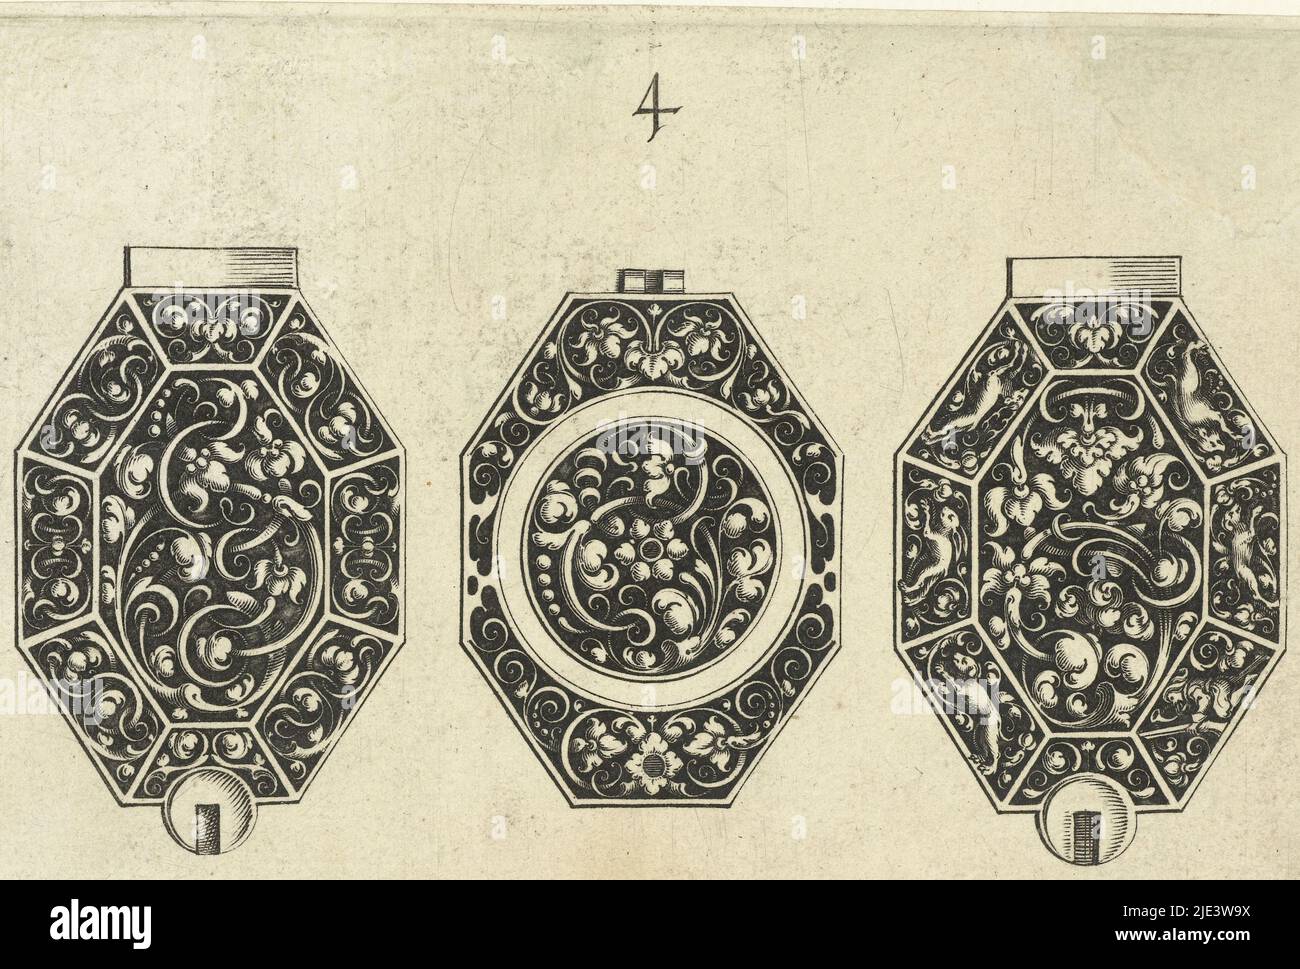 En el caso derecho, un cazador se arrodilla con un rifle, dos perros cazan una liebre, un ciervo y un jabalí, esfera octogonal entre dos estuches de reloj octogonales Estuches de reloj y diales con pergaminos foliados, impresor: Michiel le Blon, (mencionado en el objeto), Michiel le Blon, editor: Michiel le Blon, Ámsterdam, c. 1620 - c. 1626, papel, grabado, al. 80 mm x an. 105 mm Foto de stock